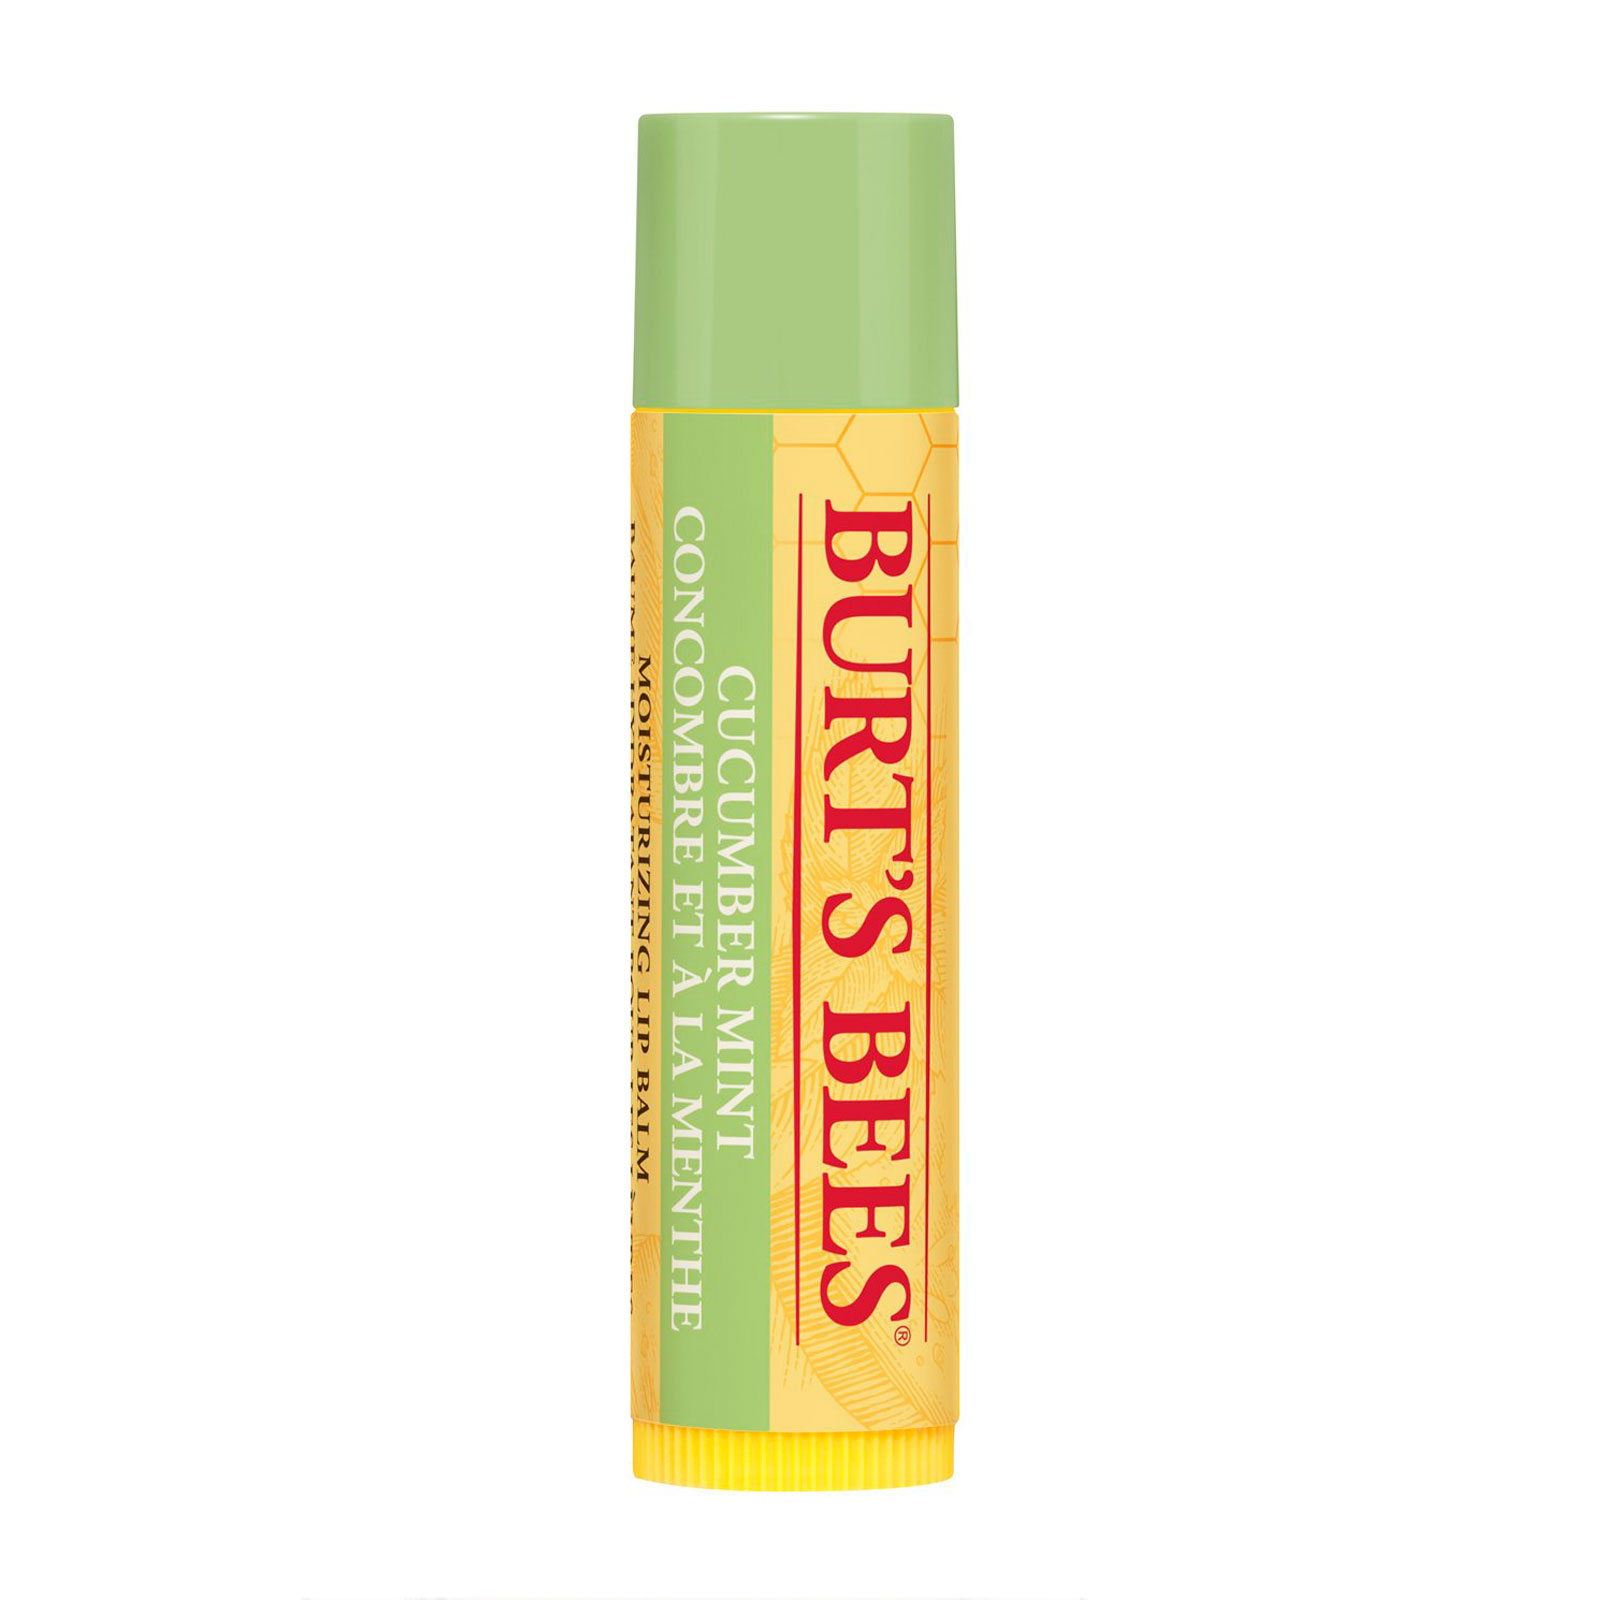 Burt's Bees 小蜜蜂 天然黄瓜薄荷润唇膏 4.25g